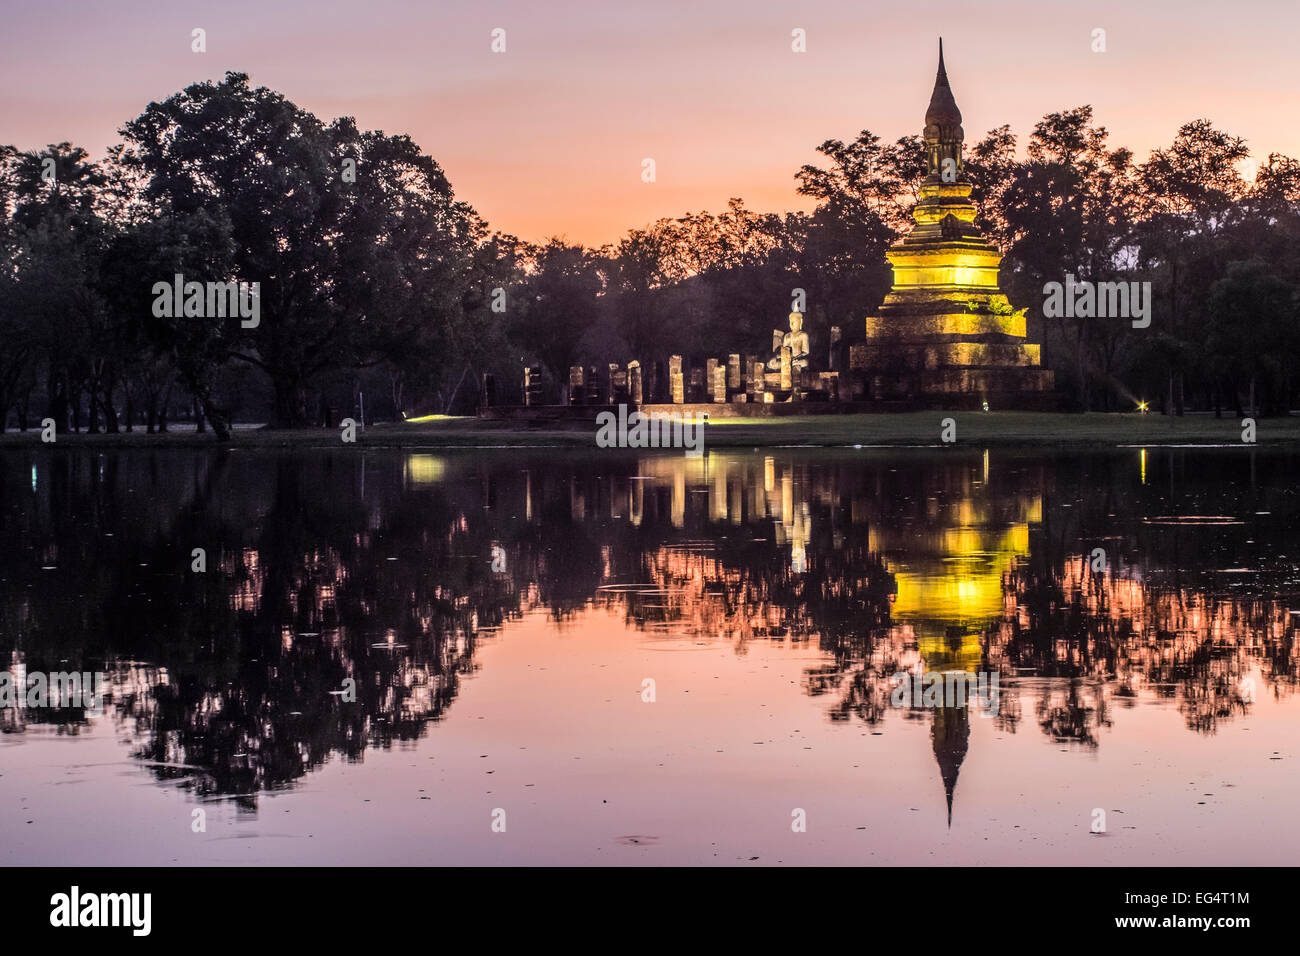 L'Asie. La Thaïlande, l'ancienne capitale du Siam. Parc archéologique de Sukhothai classée au Patrimoine Mondial de l'UNESCO. Wat Traphang Ngoen par nuit Banque D'Images